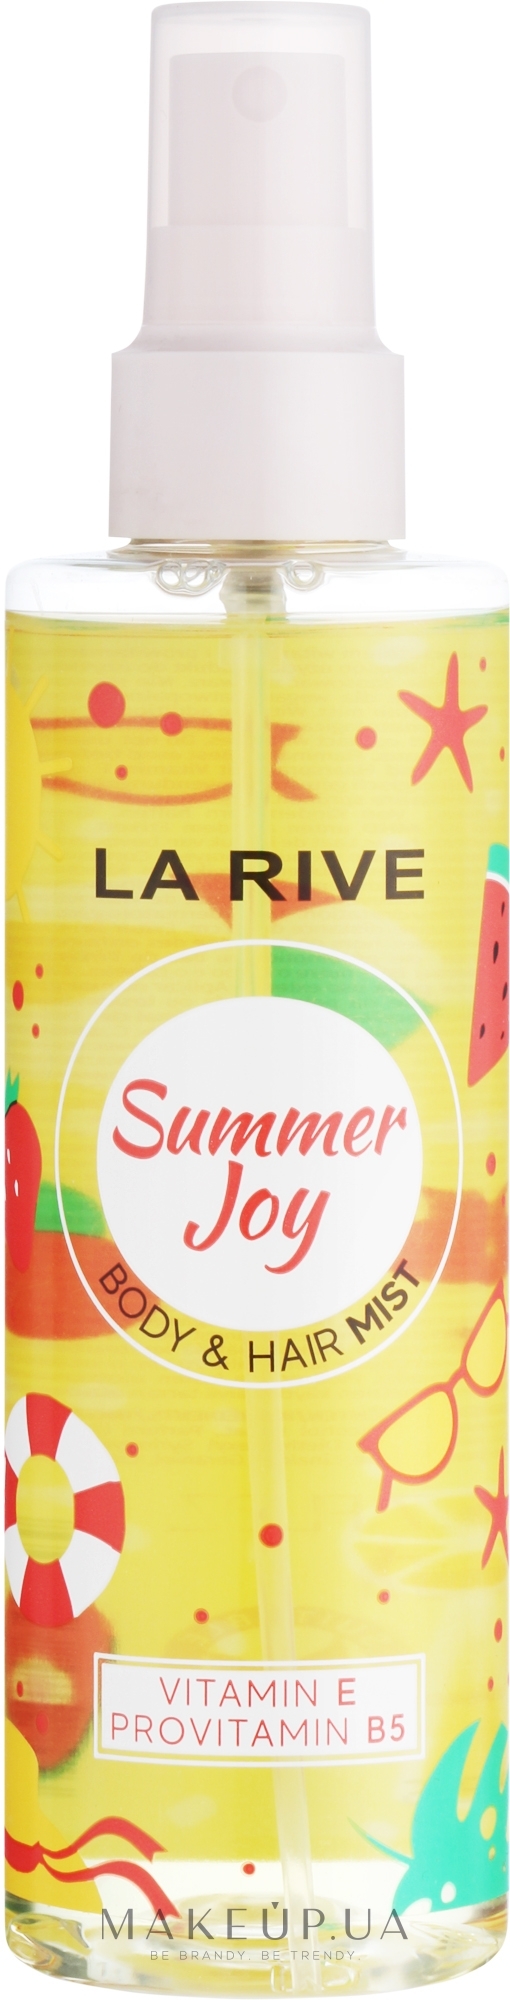 Парфюмированный спрей для волос и тела "Summer Joy" - La Rive Body & Hair Mist — фото 200ml